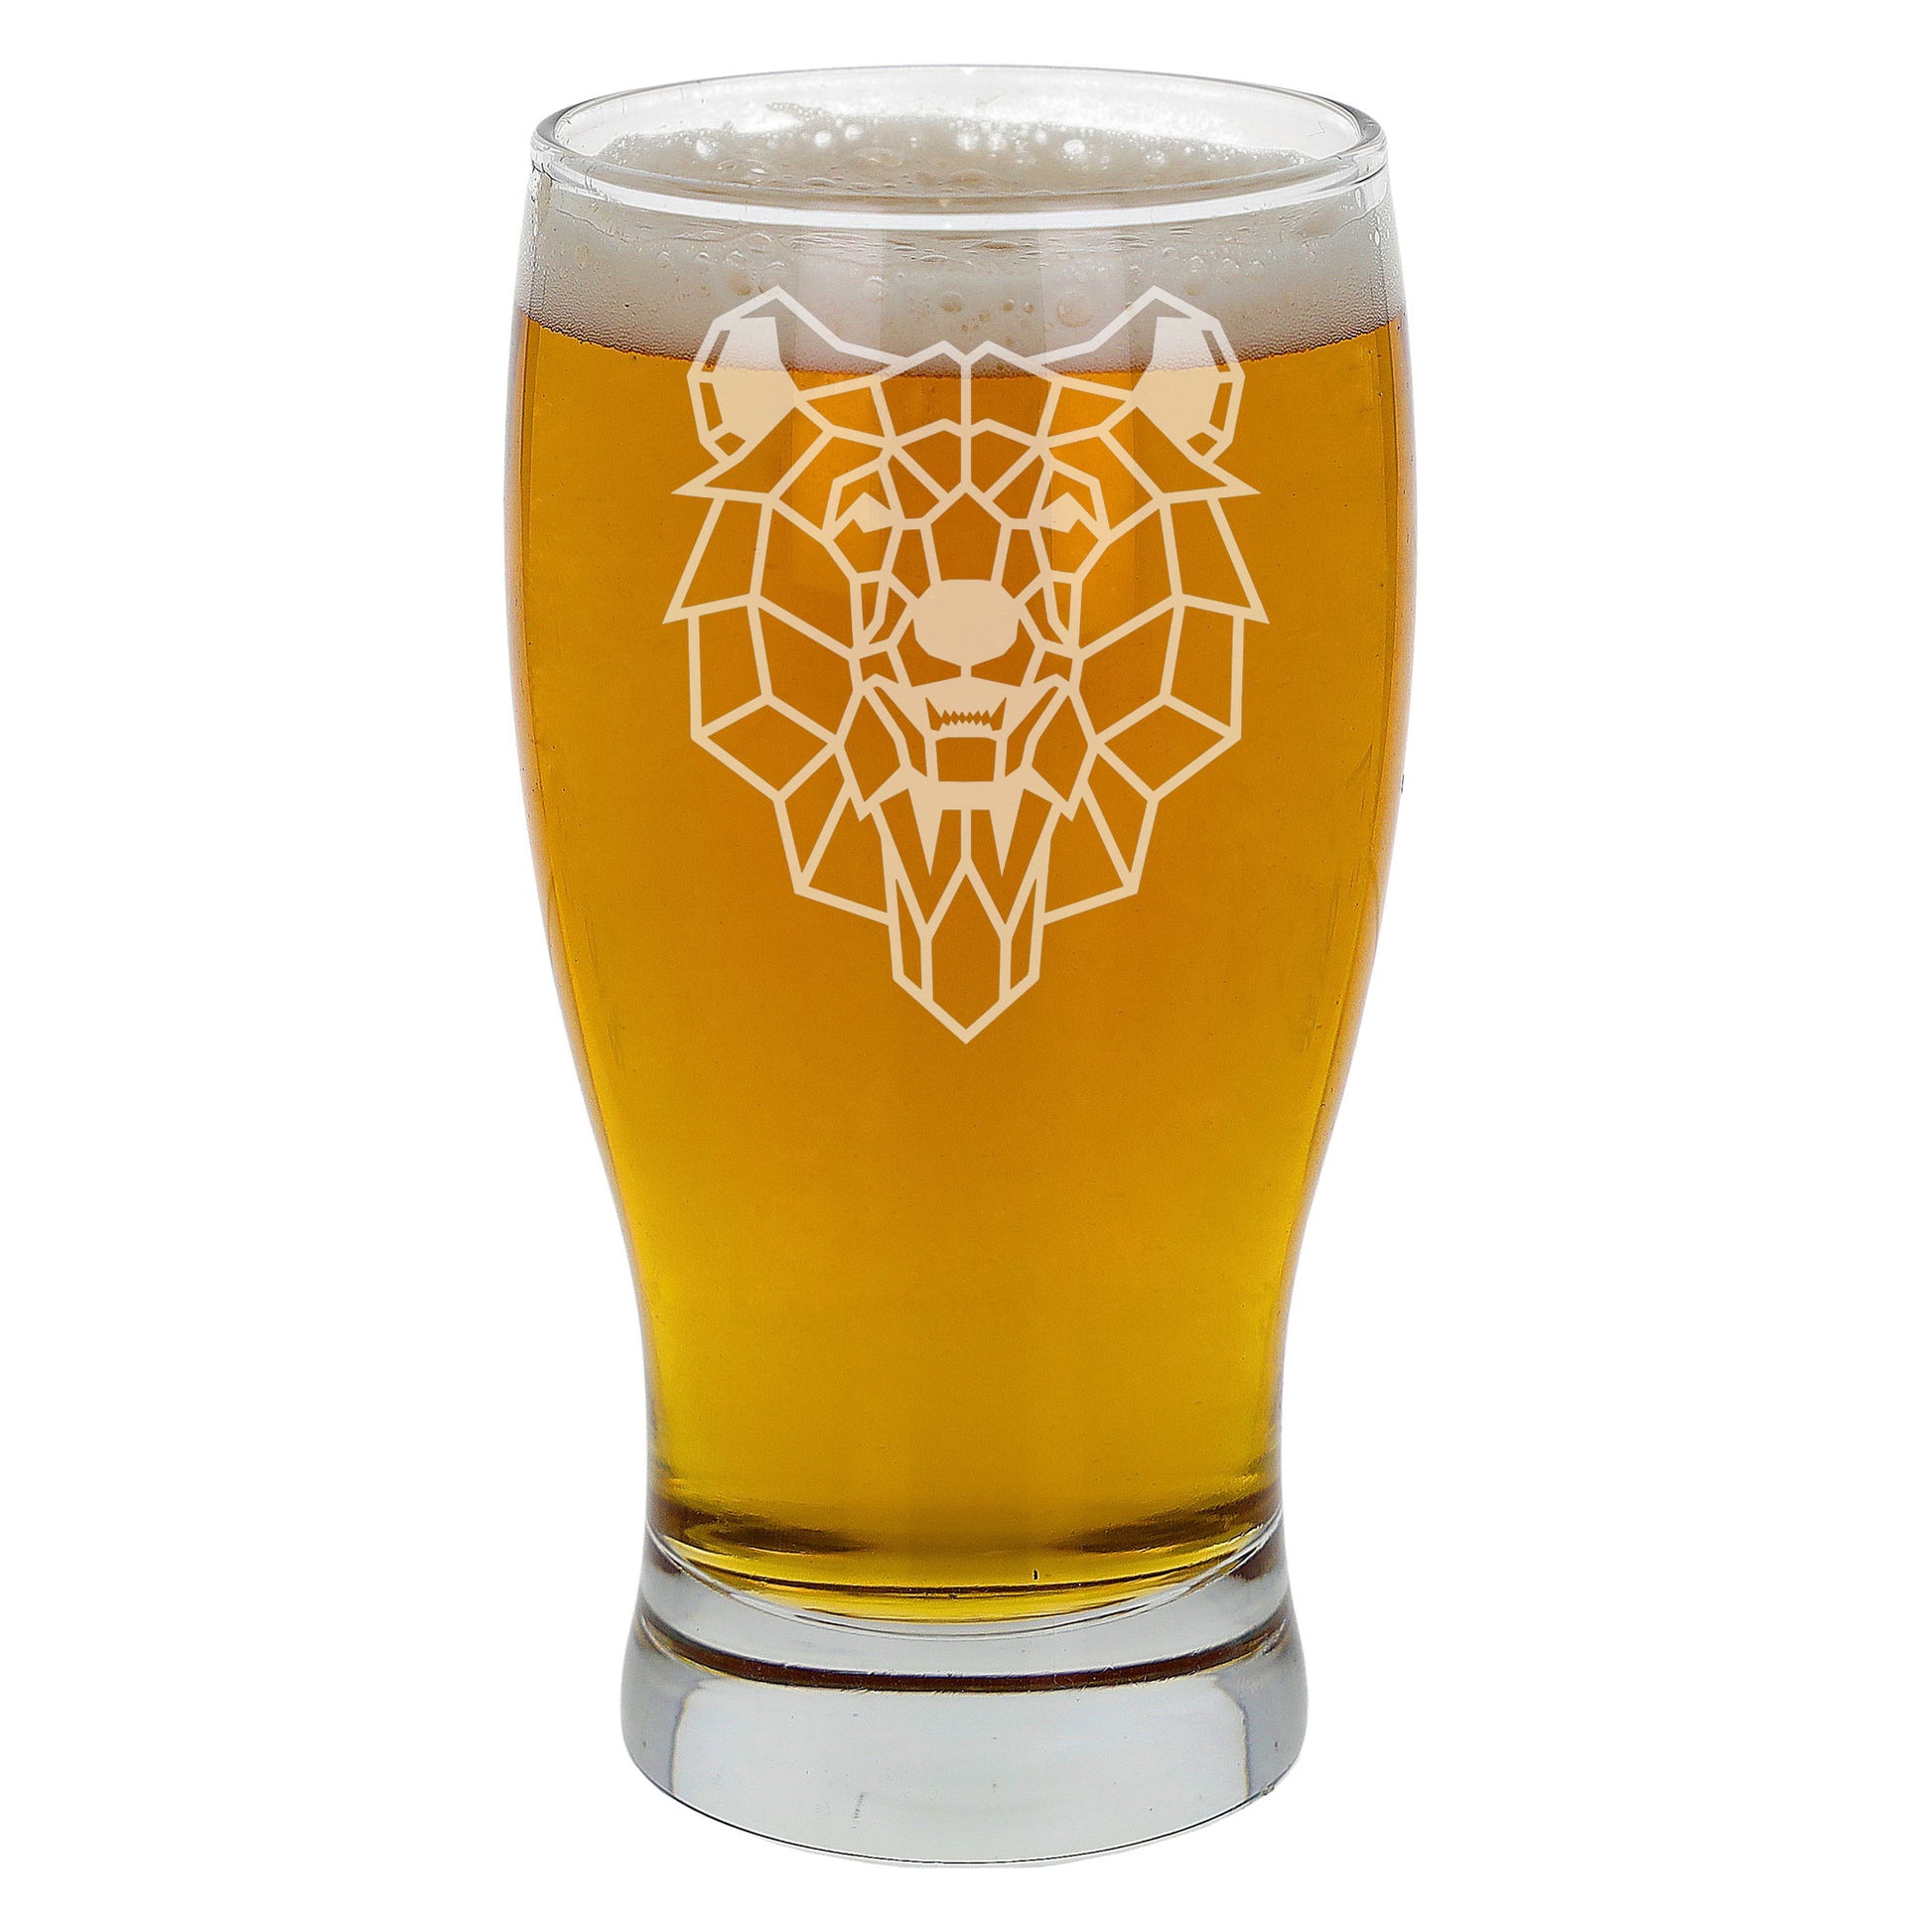 Bear Engraved Beer Pint Glass  - Always Looking Good -   